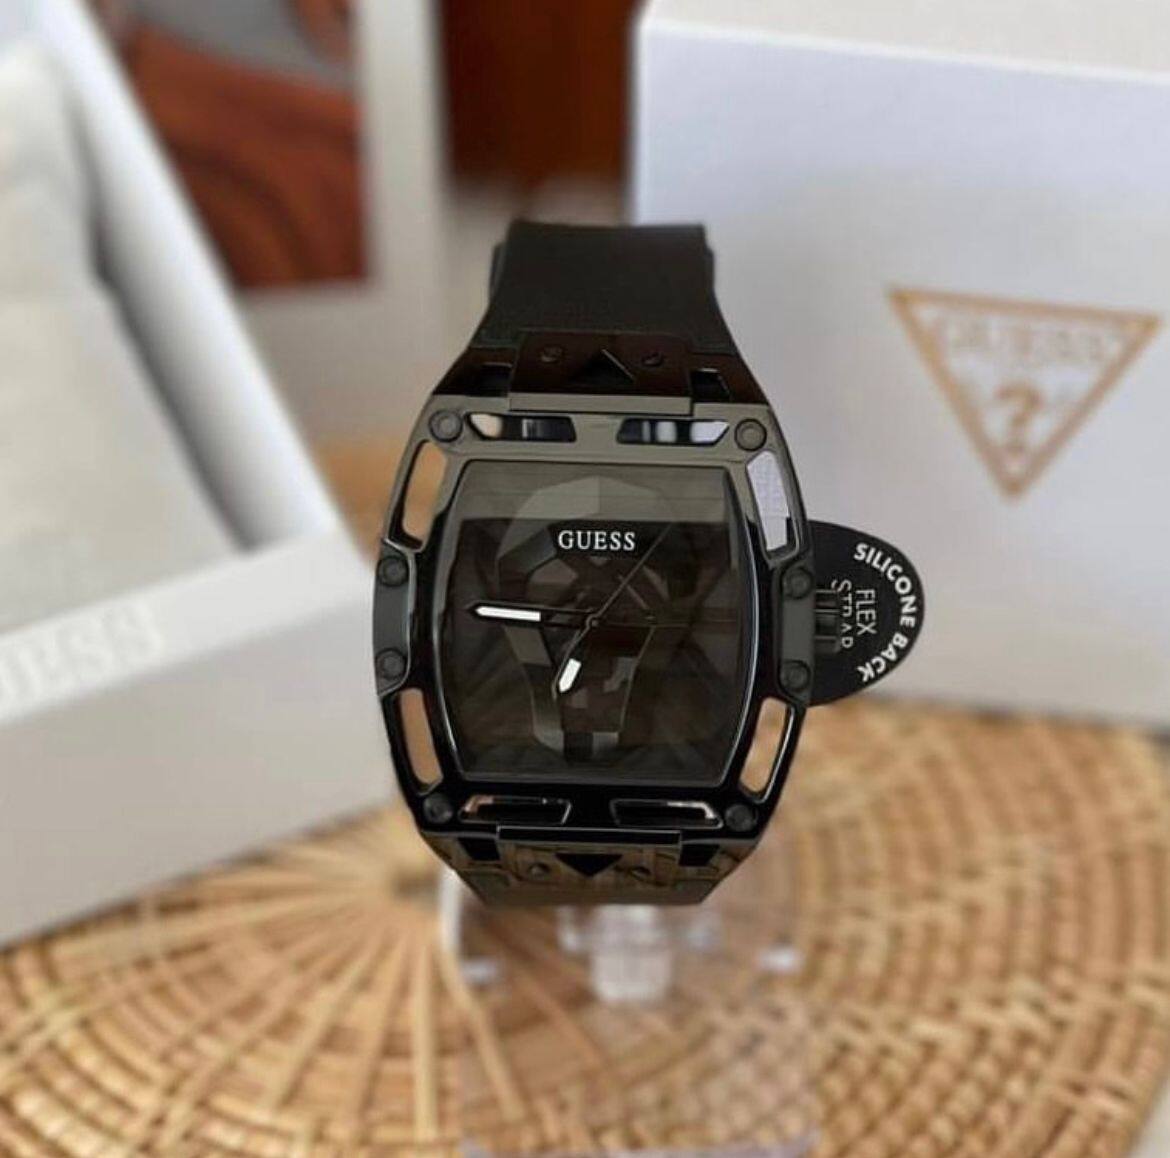 นาฬิกา Guess นาฬิกาข้อมือผู้ชาย รุ่น W1049G6 นาฬิกาแบรนด์เนม สินค้าขาย ...